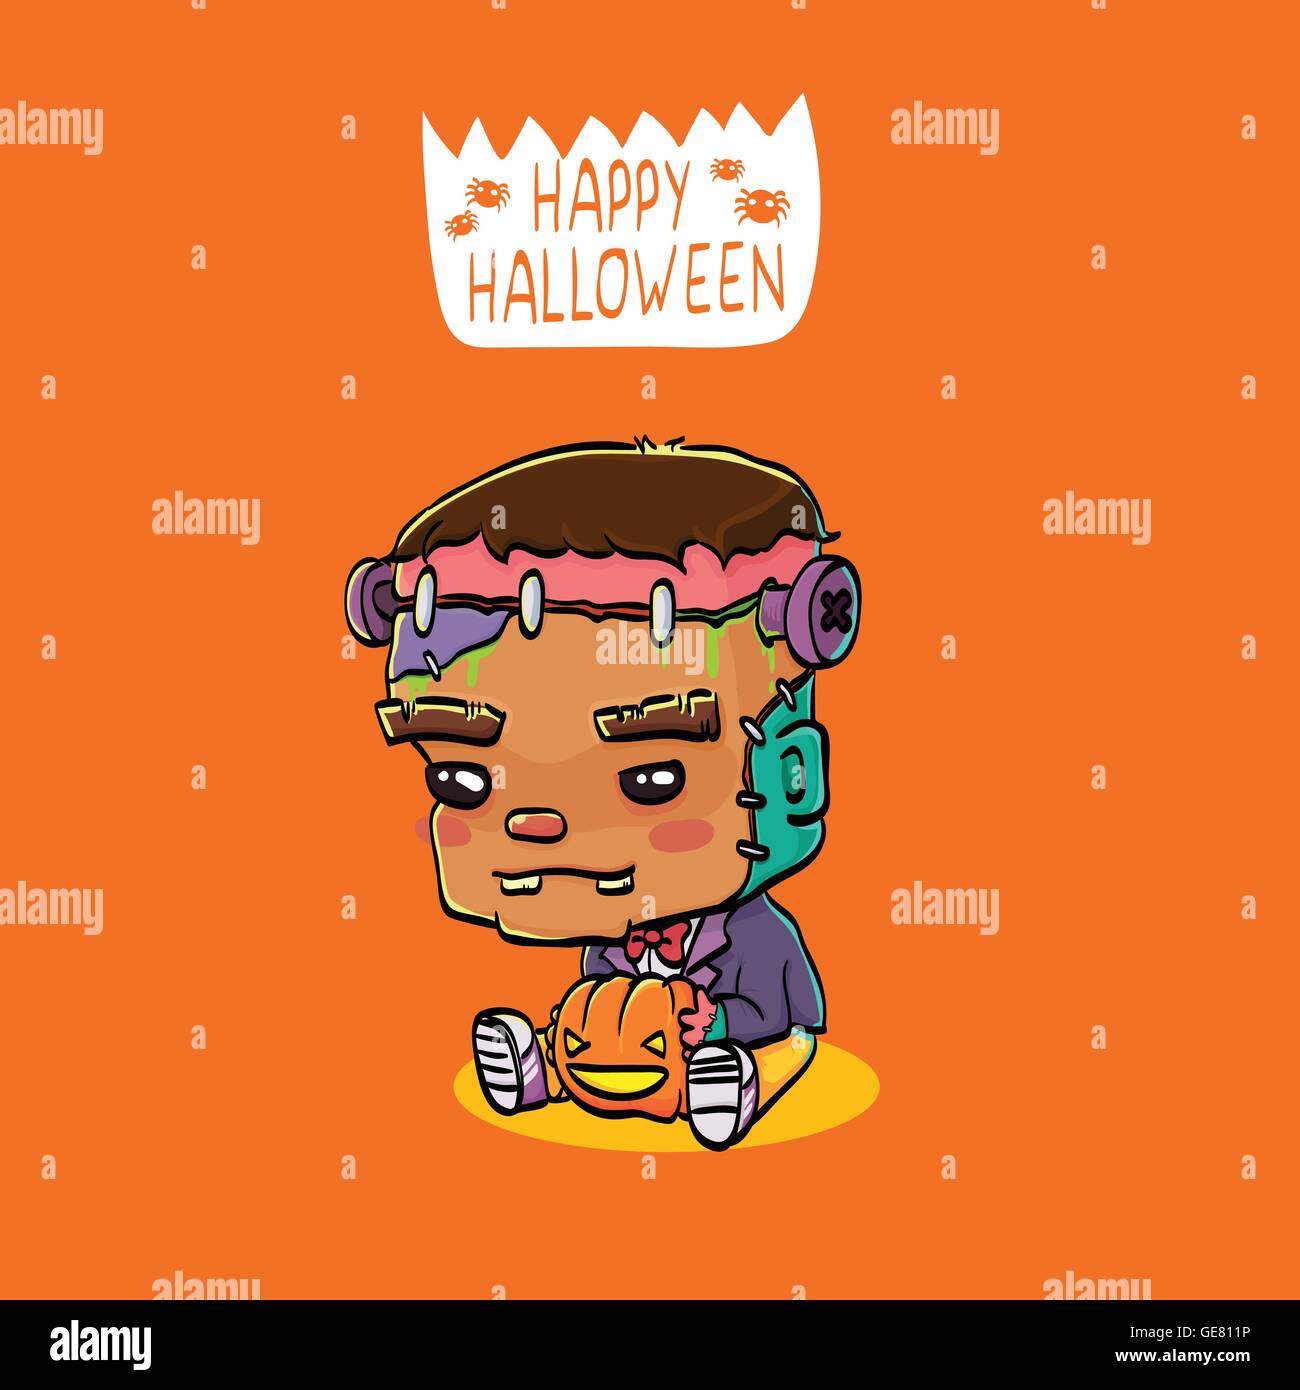 Vektor-Illustration von niedlichen Cartoon Charakter Frankenstein für Halloween Grußkarte Stock Vektor